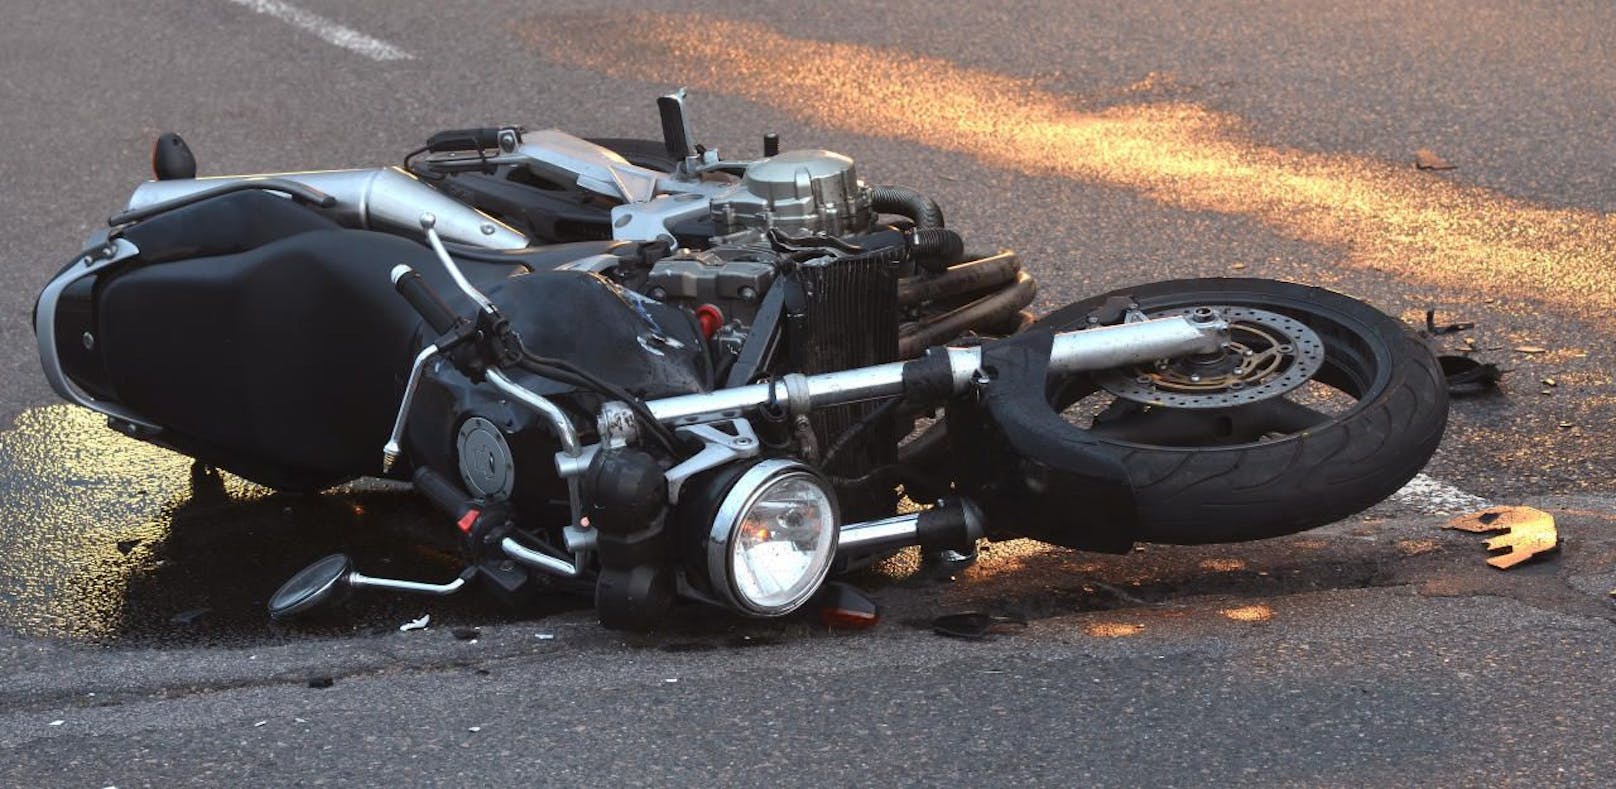 Schrecklicher Biker-Unfall fordert einen Verletzten! Am Motorrad entstand ein Totalschaden.